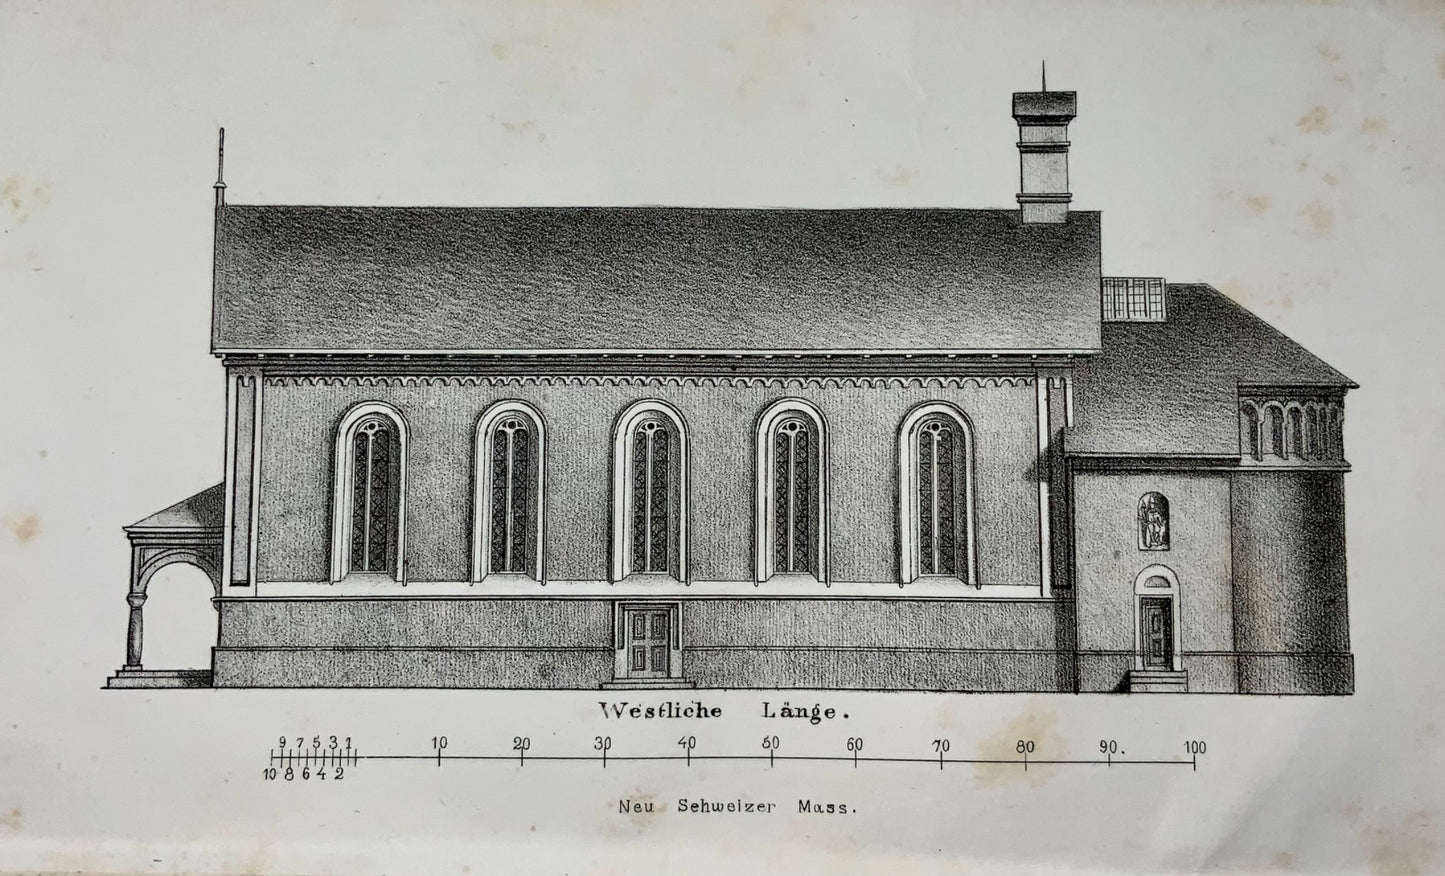 1852 Rural Church Architecture in Switzerland. Christliche Baukunst, X. Herzog, book